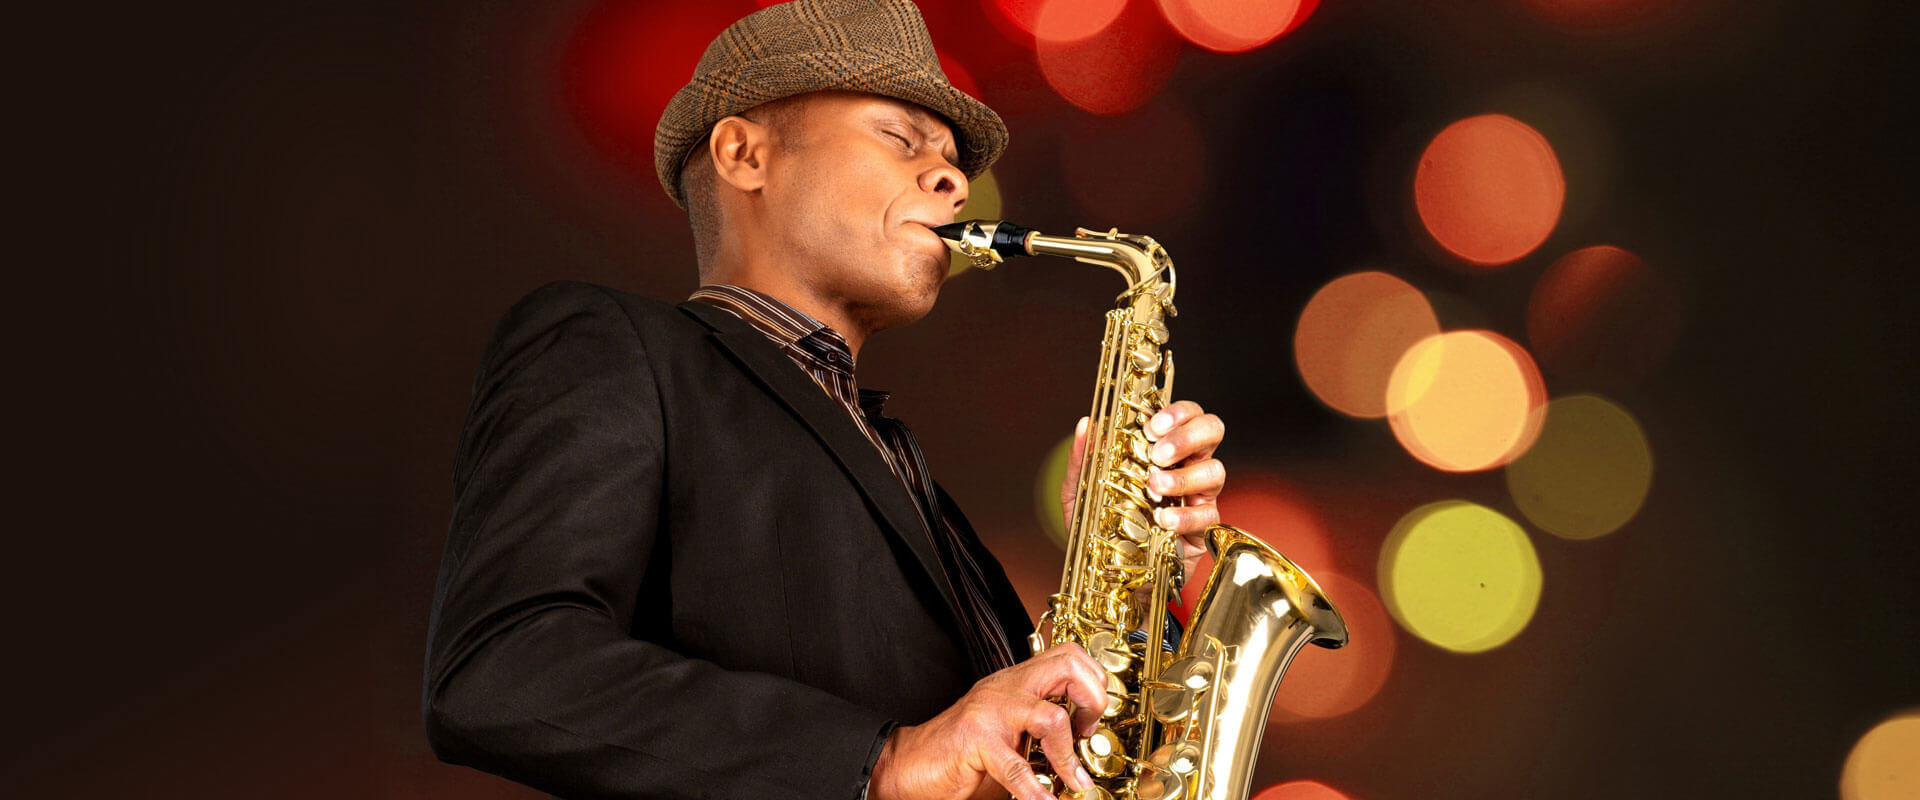 Saxophone Lessons Washington, CT